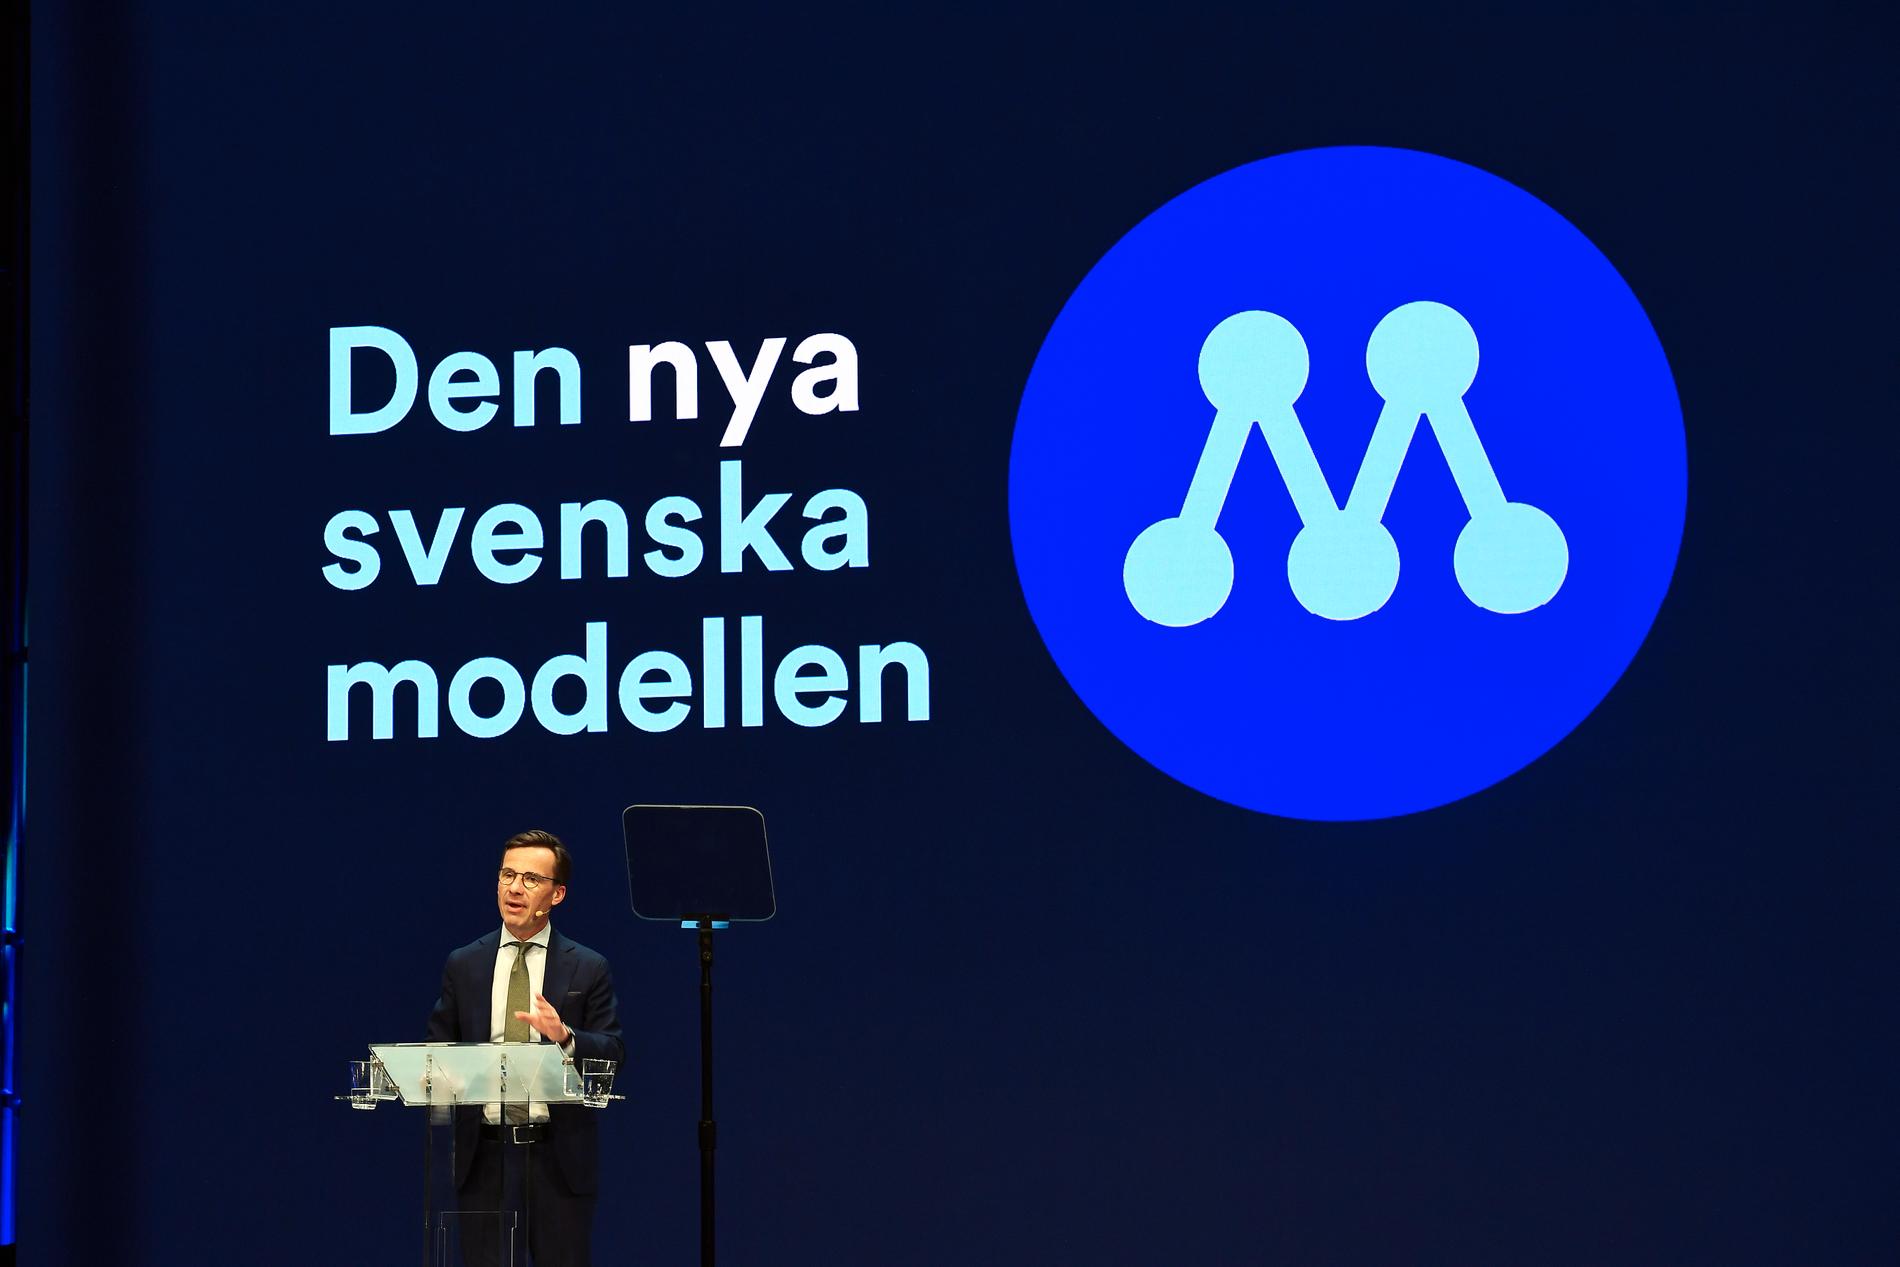 Ulf Kristerssons nya svenska modell är att överge överenskommelser.